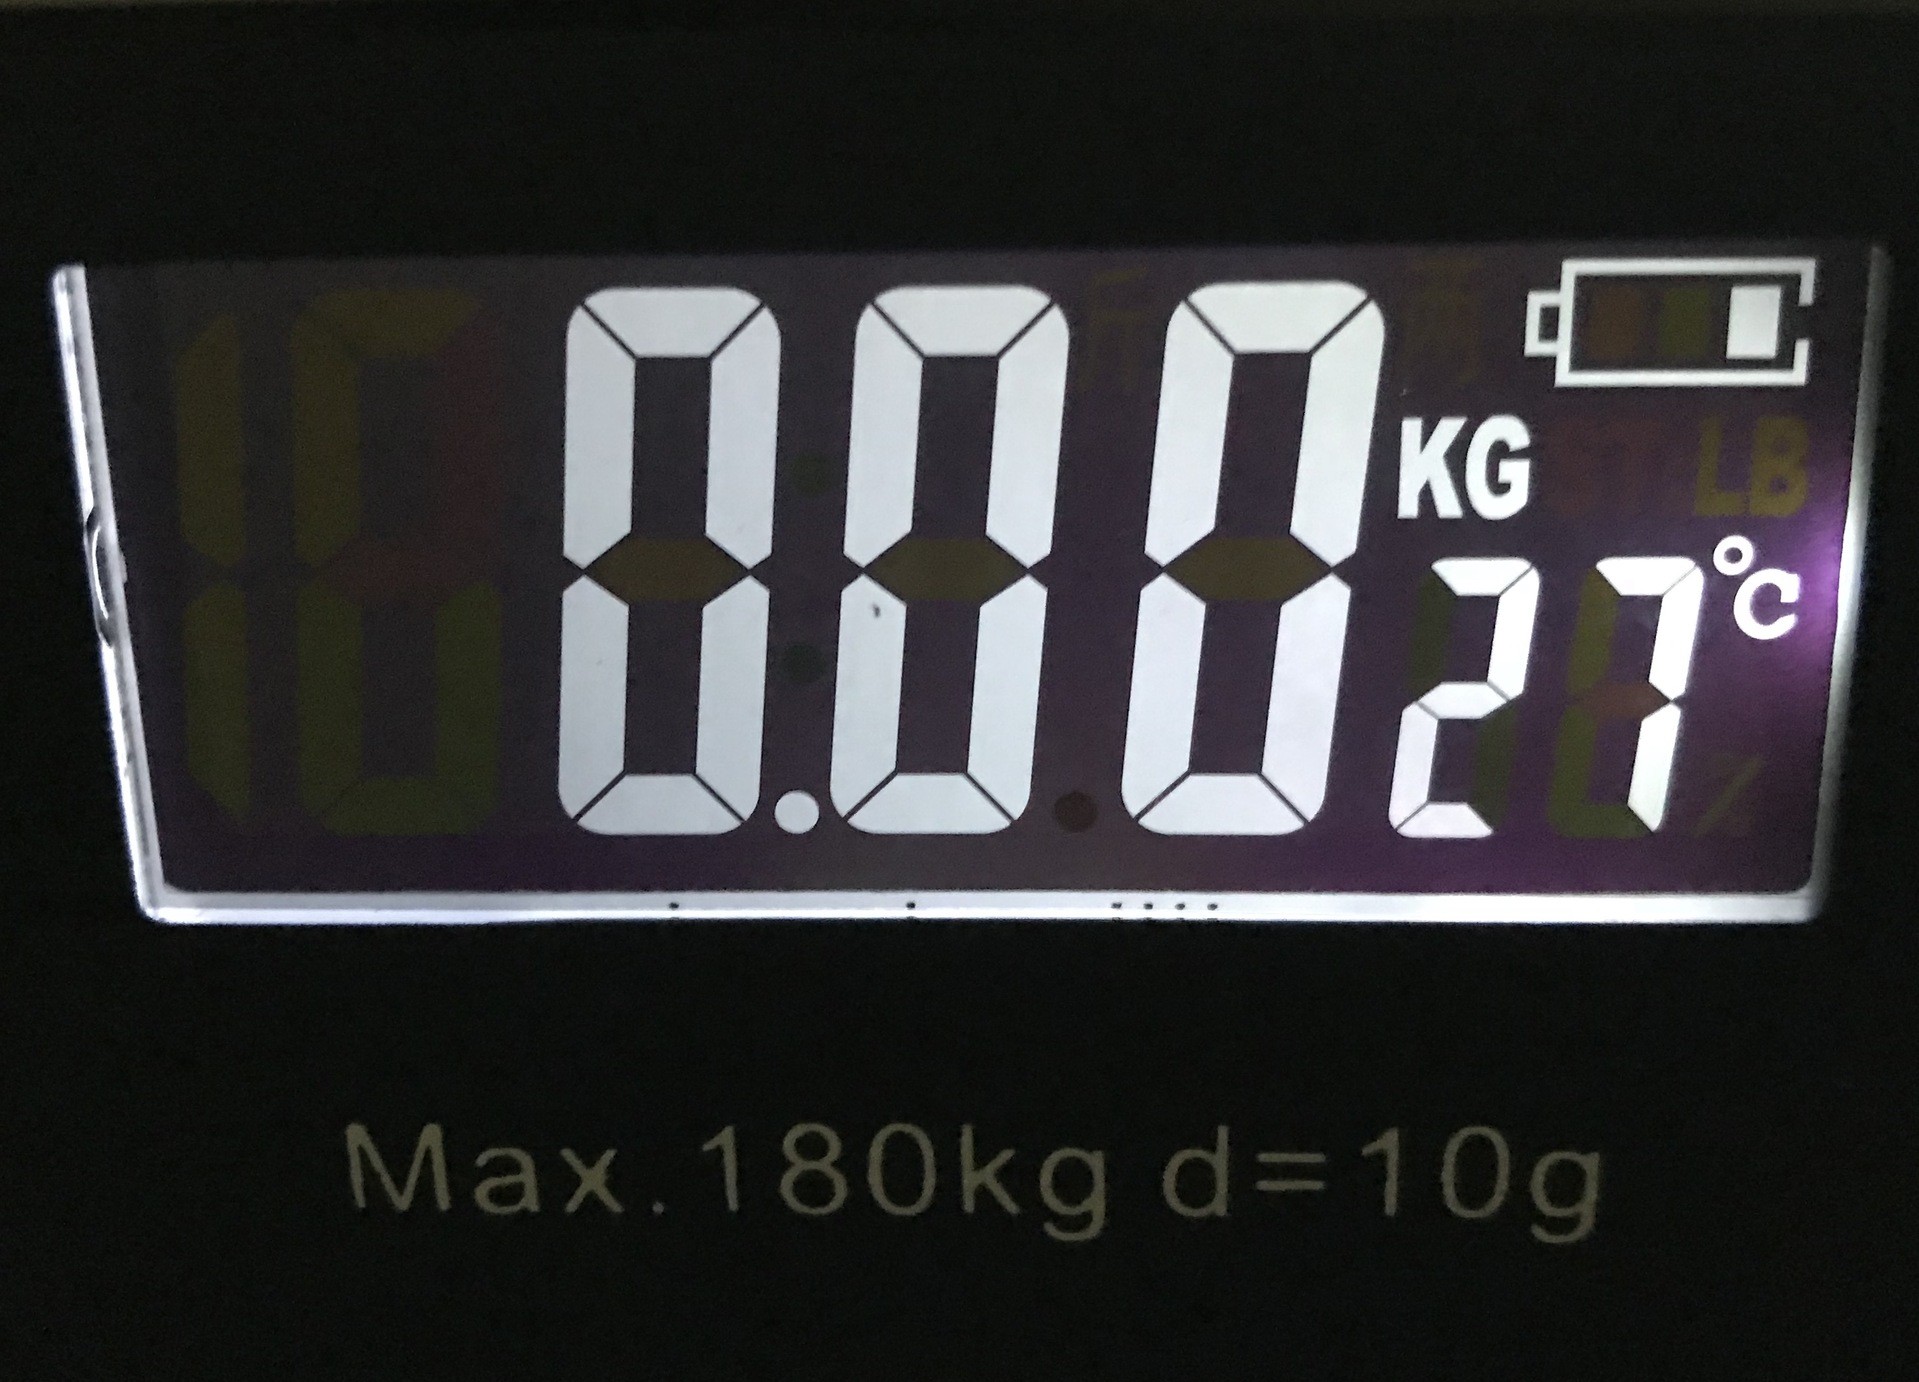 液晶大屏家用体重秤 背光显示电池容量、温度电子秤 新款健康秤详情图9